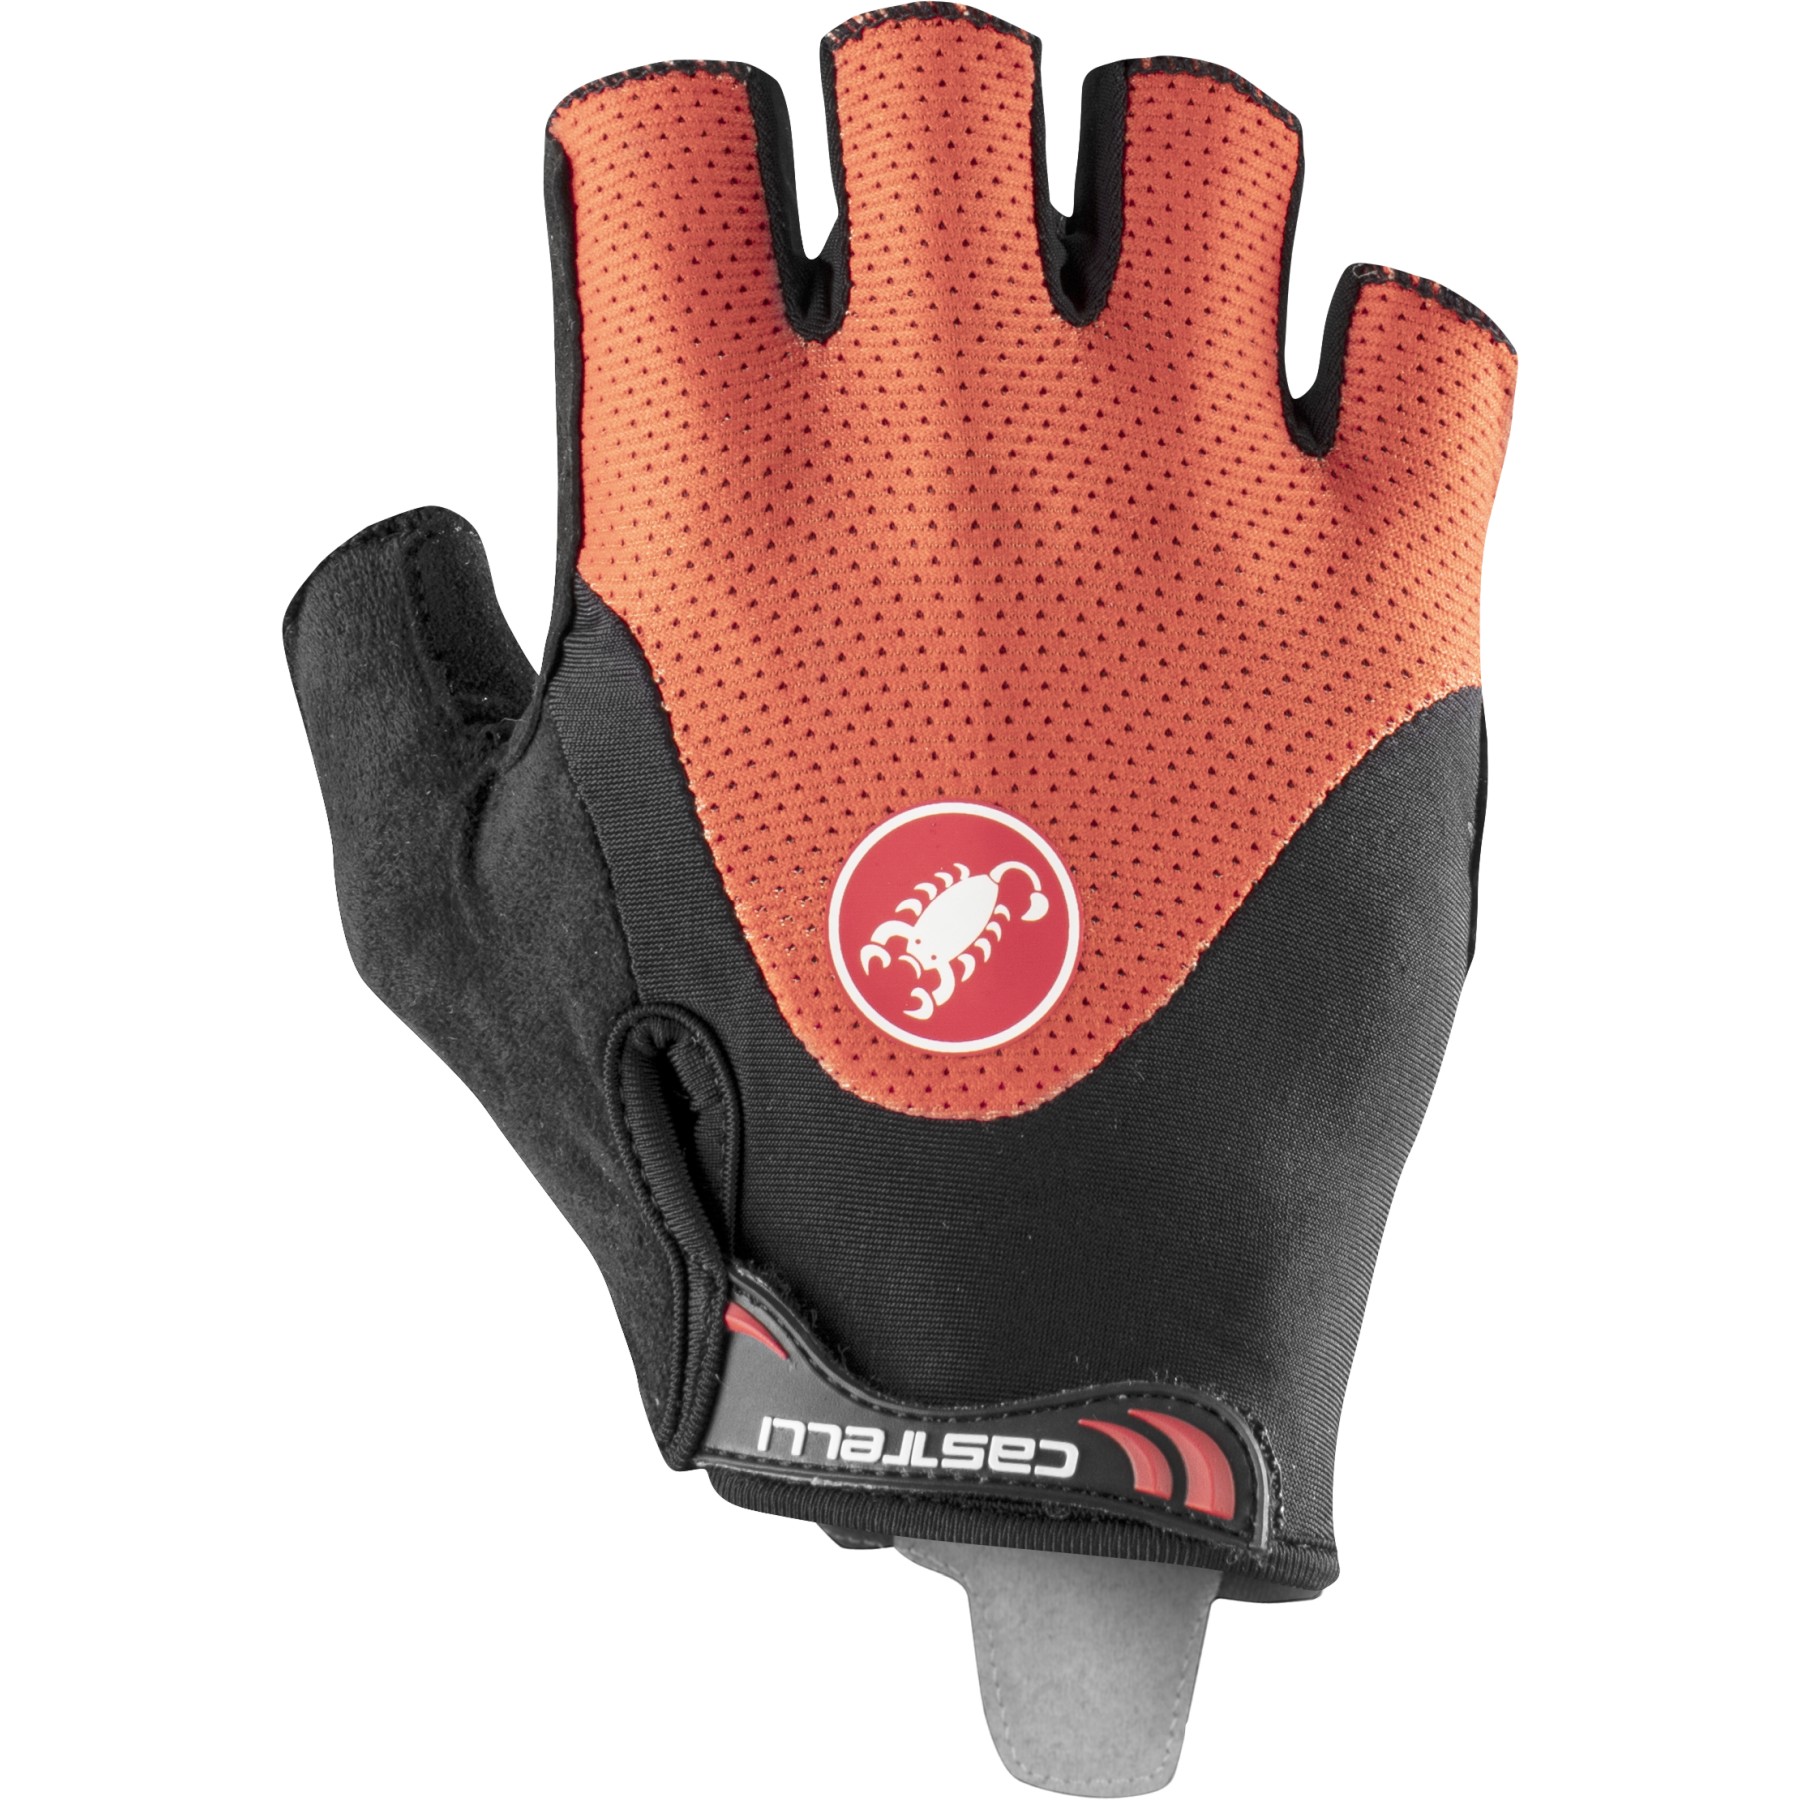 Productfoto van Castelli Arenberg Gel 2 Handschoenen met Korte Vingers - fiery red/black 656